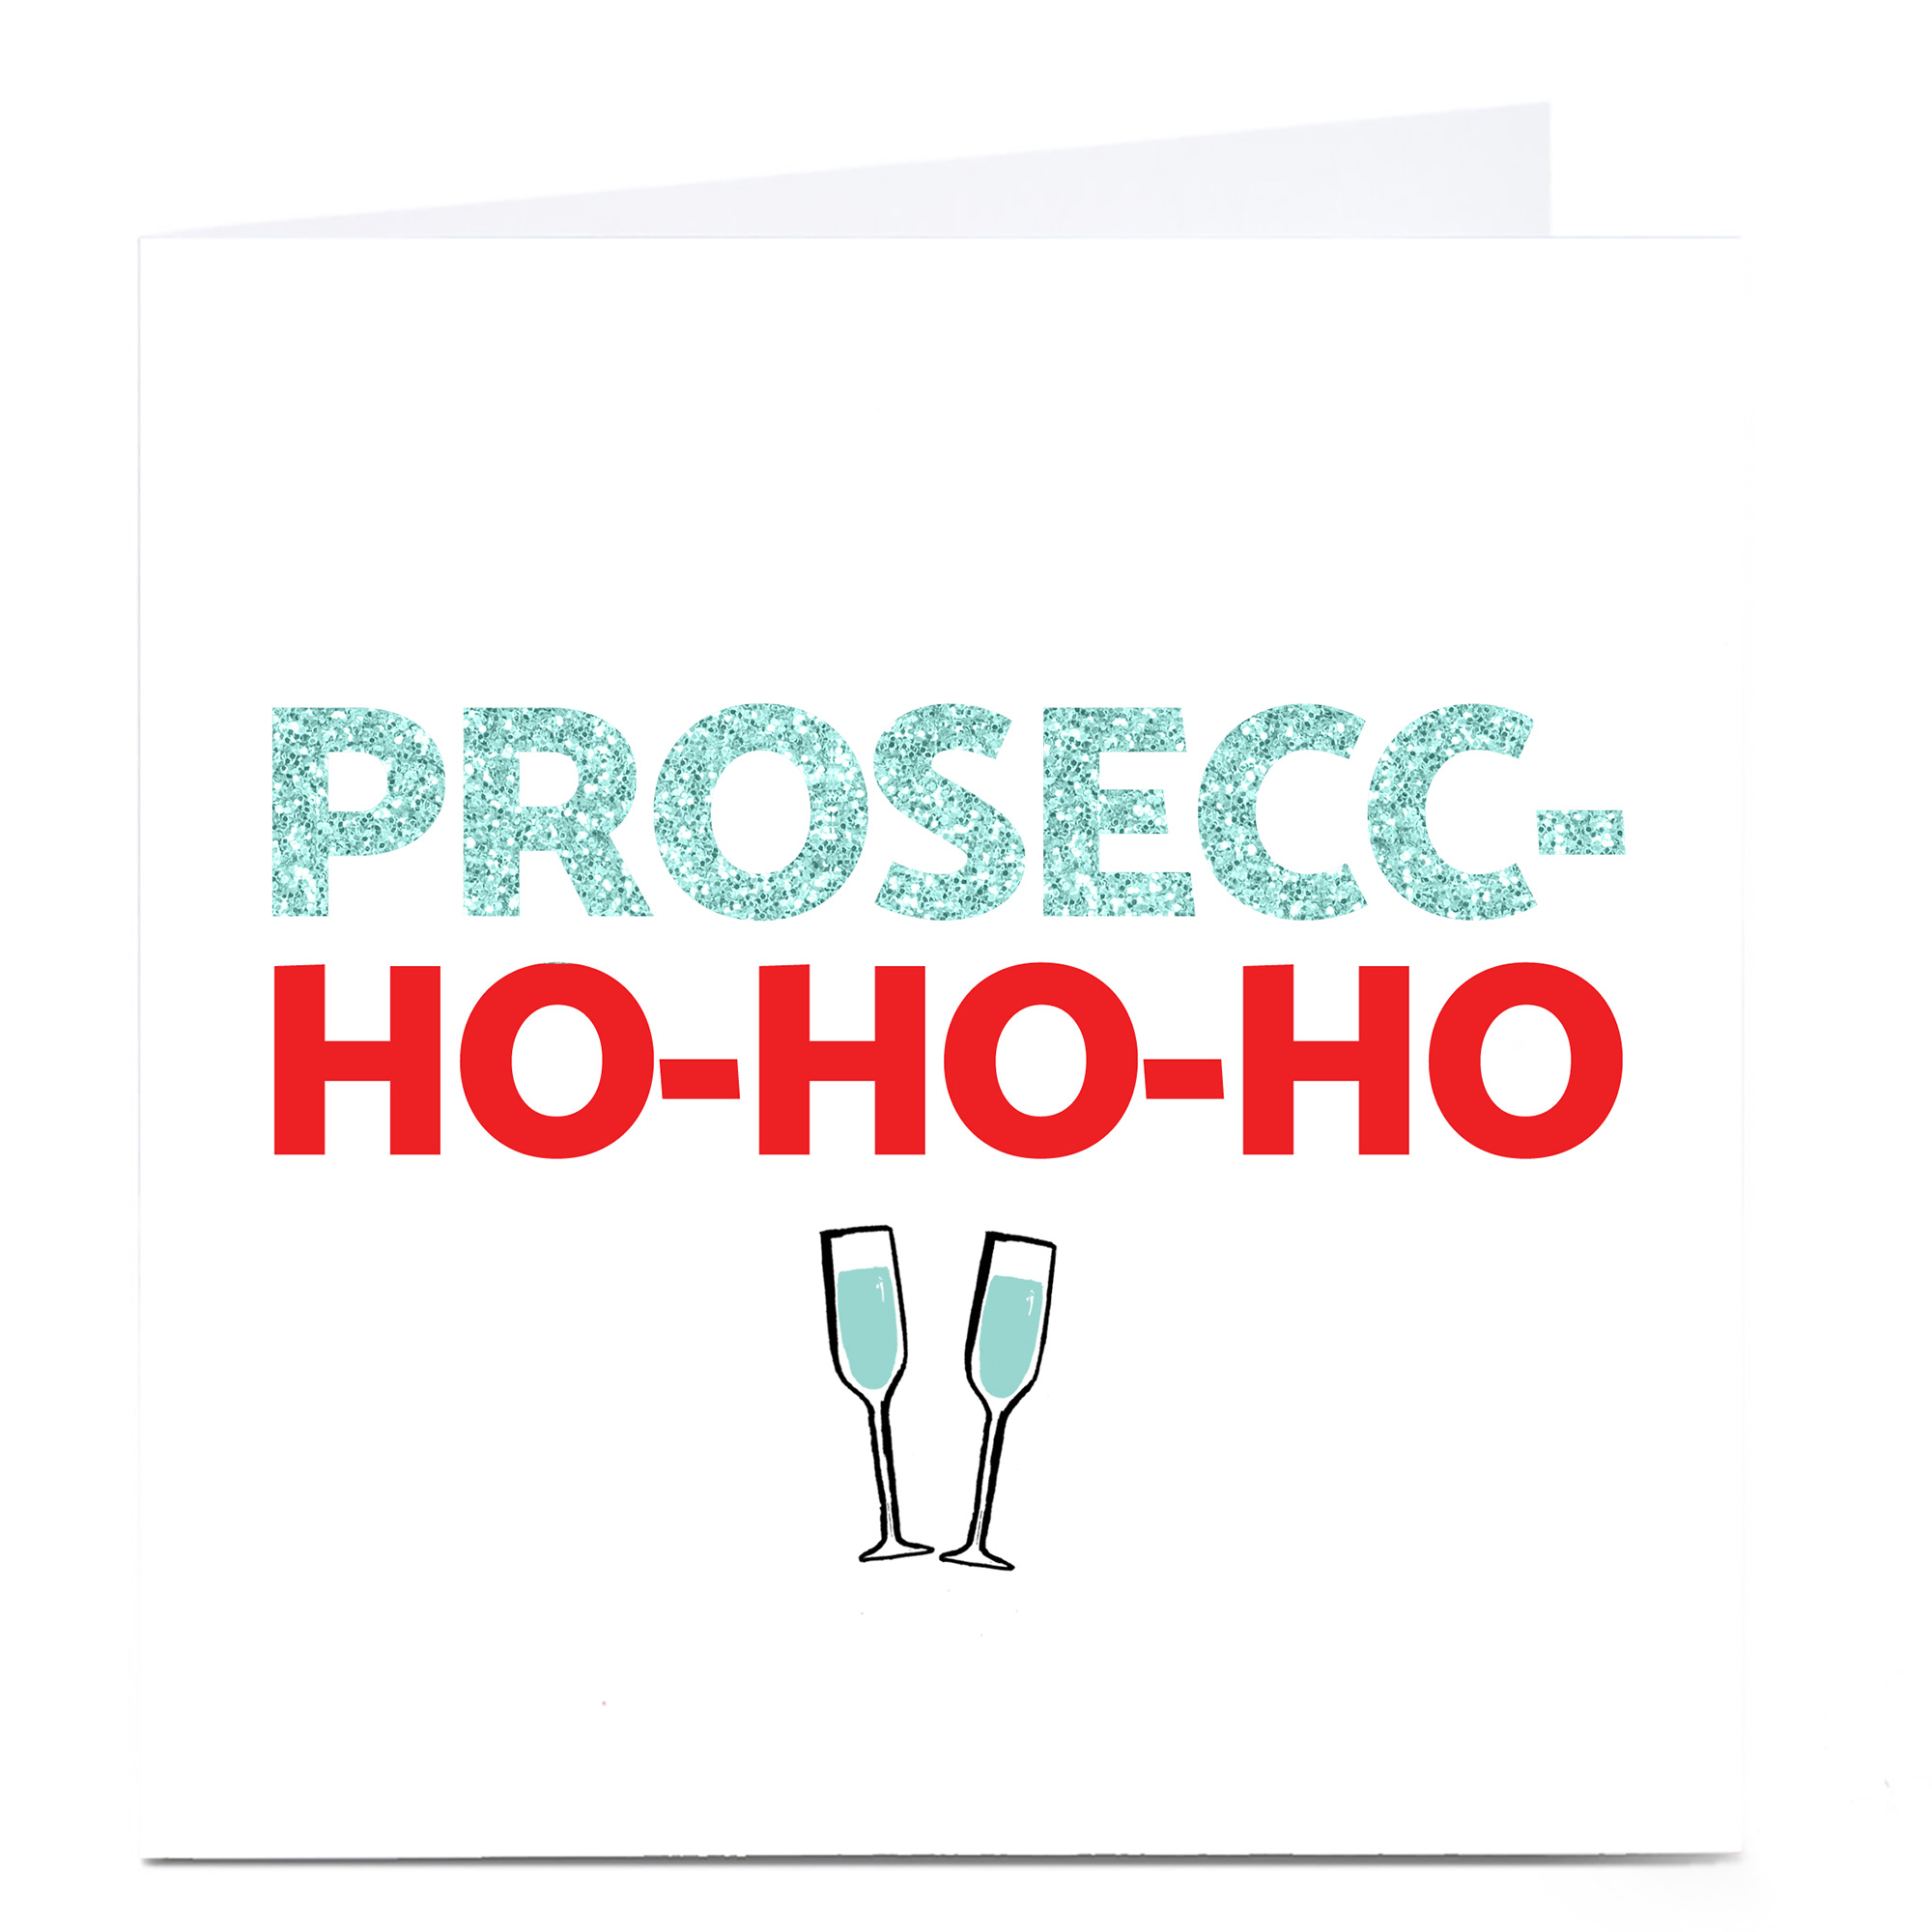 Personalised Christmas Card - Prosecc-Ho-Ho-Ho